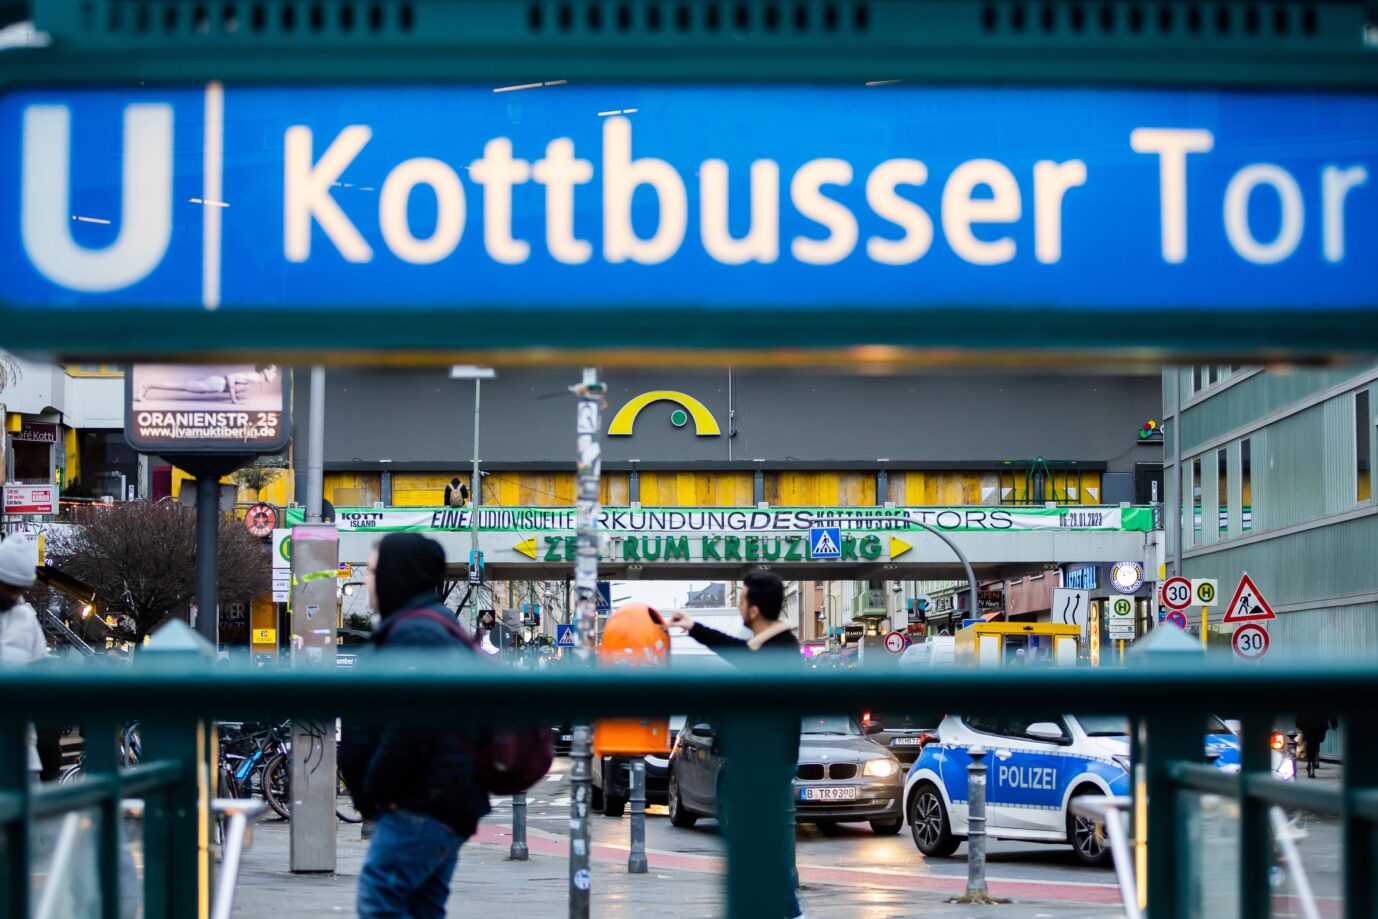 Polizei als Mörder beschimpft: Das Kottbusser Tor ist einer der gefährlichsten Orte Berlins.